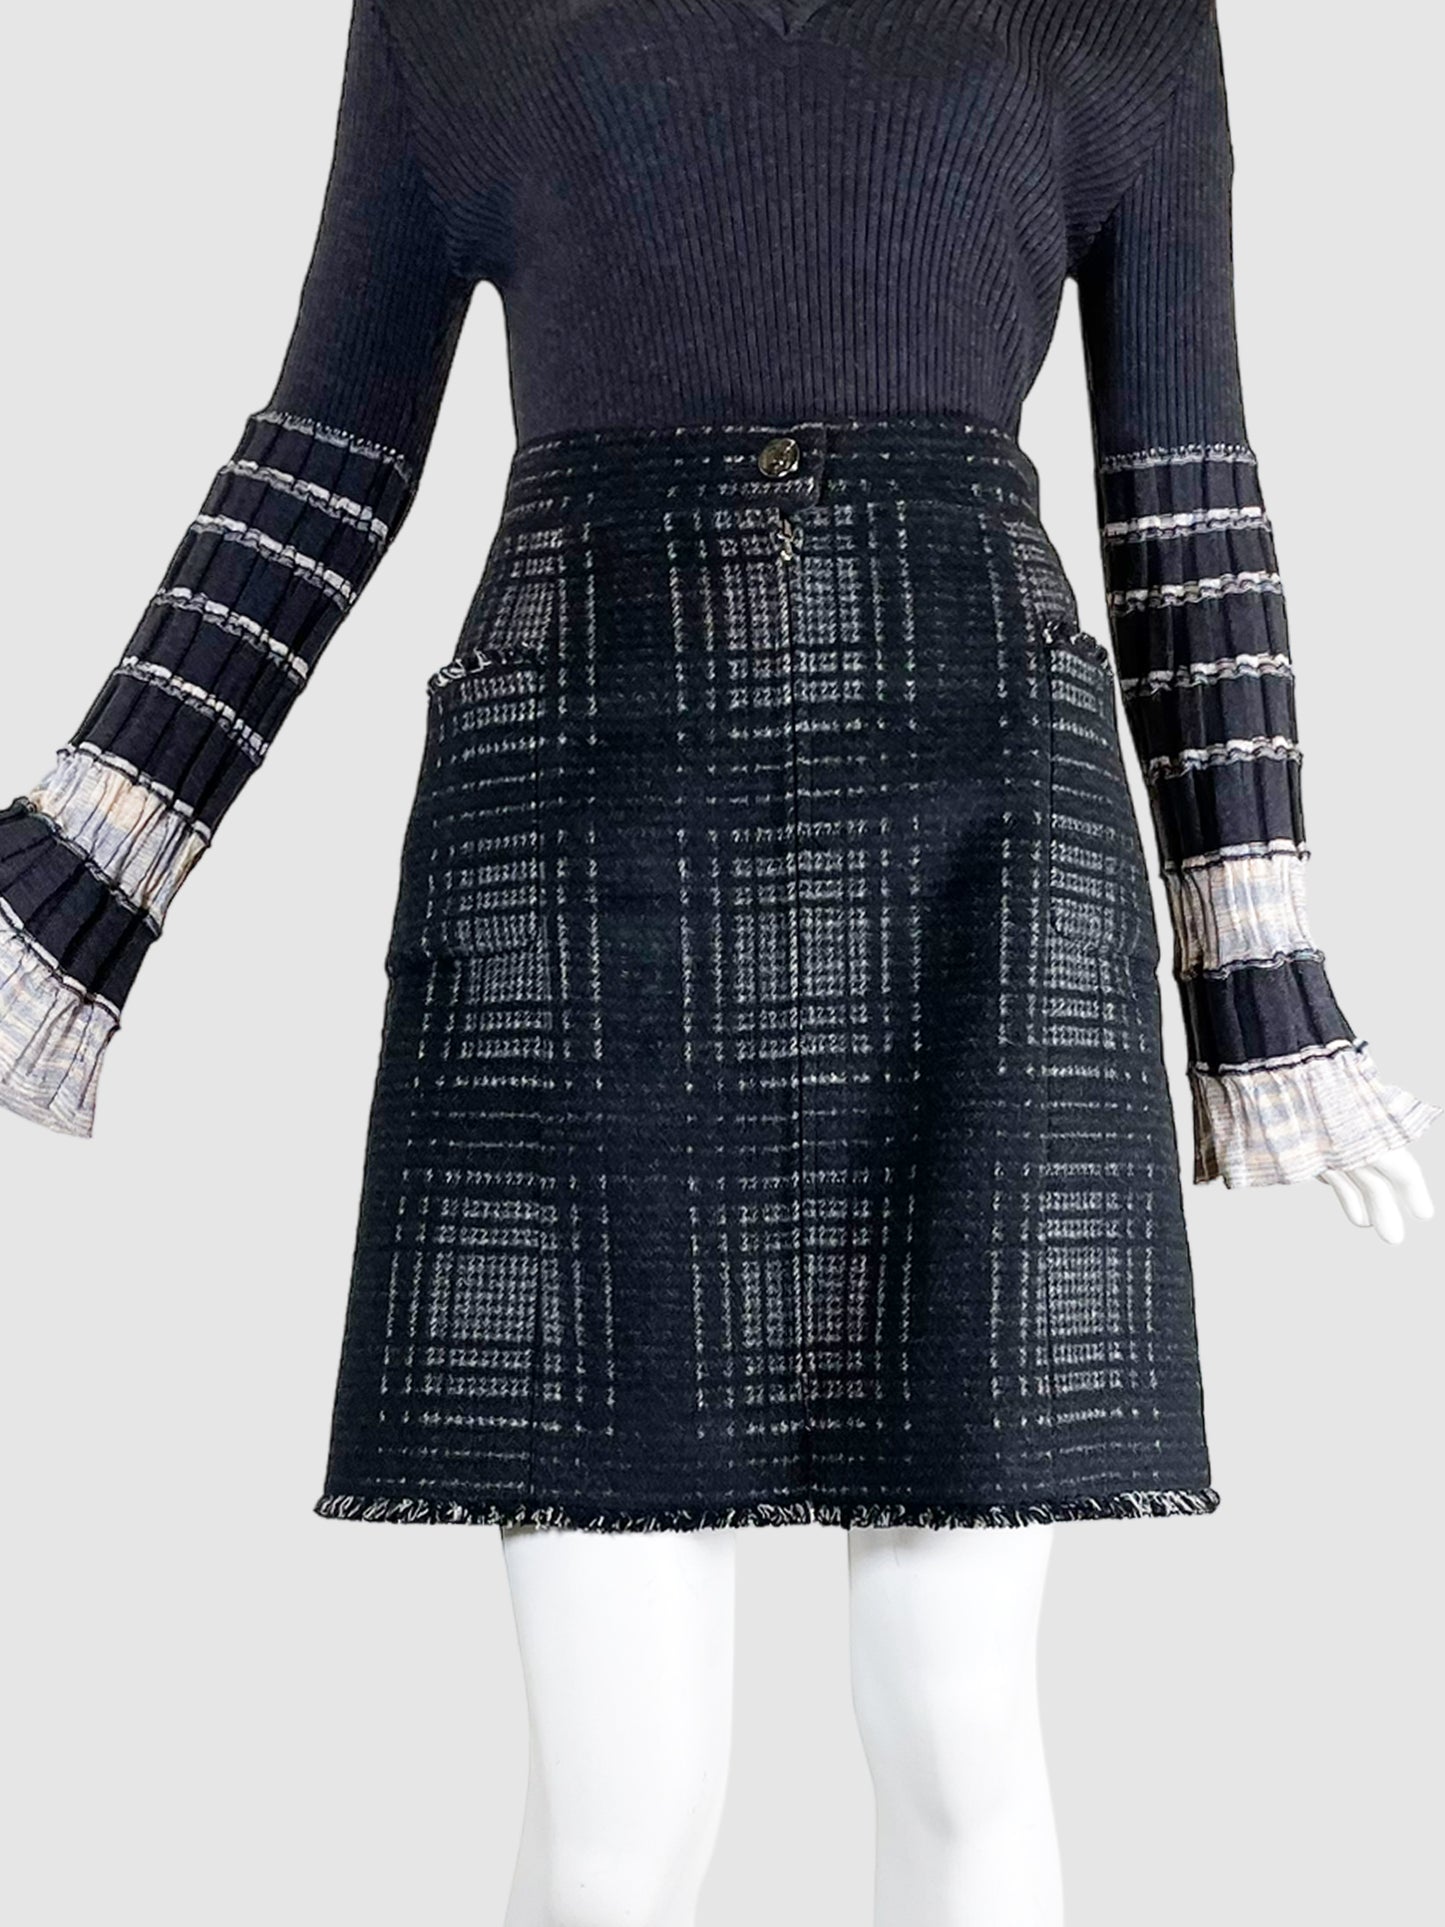 Vintage Chanel Plaid Tweed Mini Skirt - Size 42